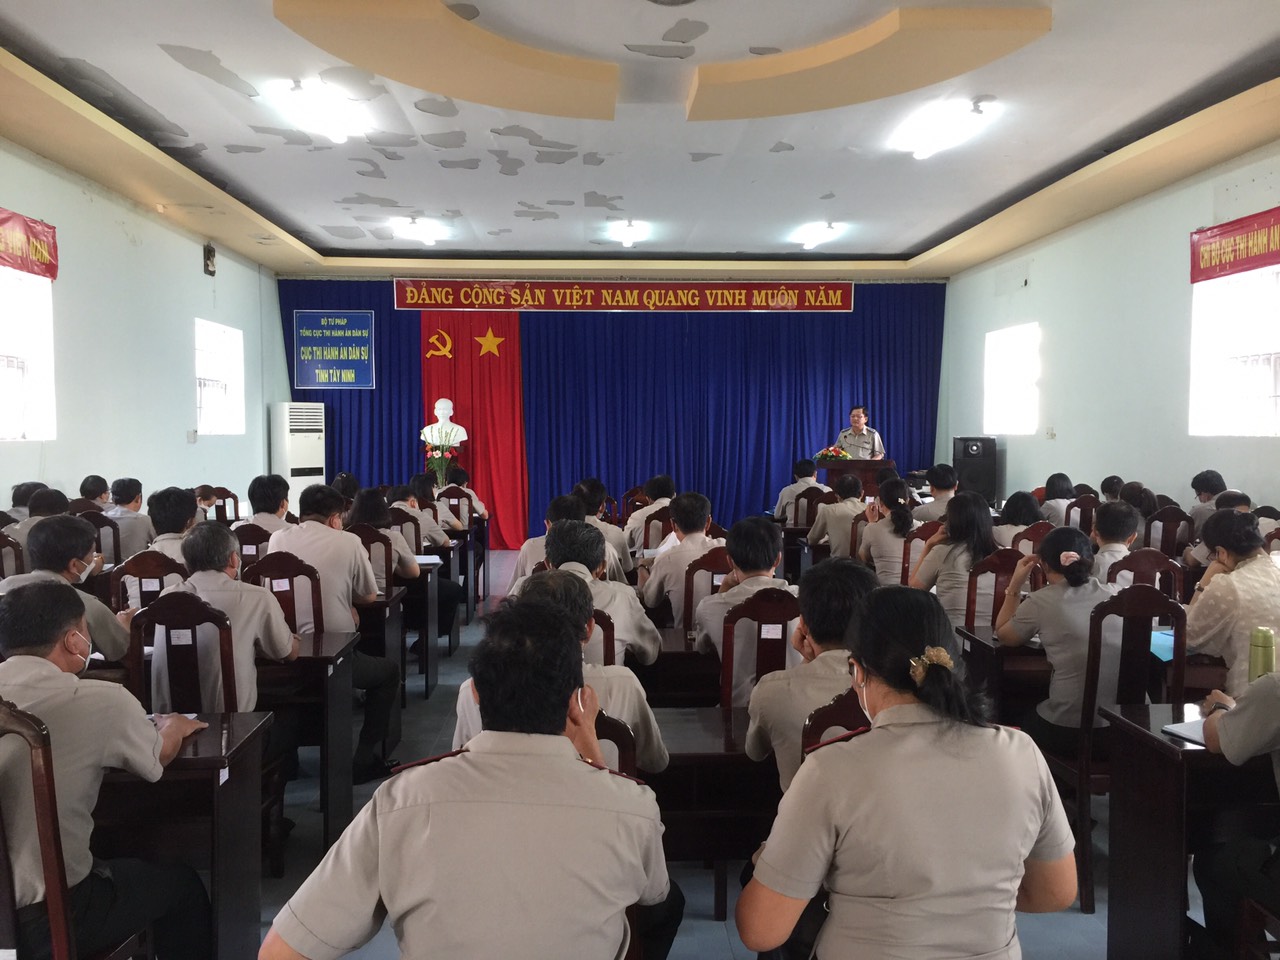 Cục Thi hành án dân sự (THADS) tỉnh Tây Ninh tổ chức Hội nghị triển khai các chuyên đề về công tác Thi hành án dân sự năm 2022